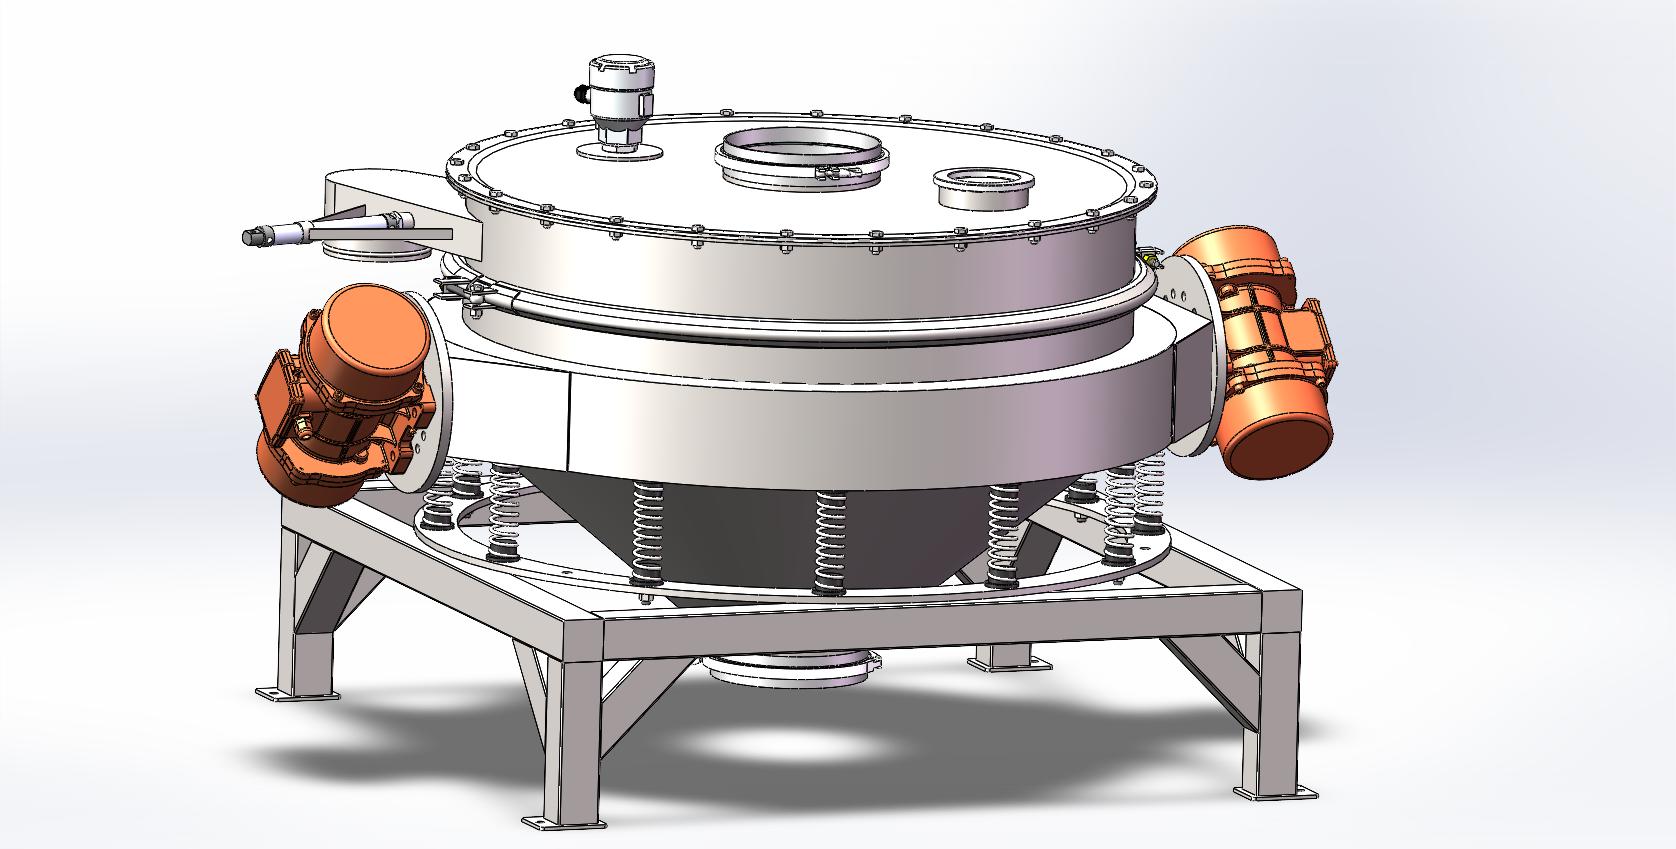 8台直径1000MM非标定制直排筛和2台全不锈钢振动筛试机合格，符合出厂标准，发往江苏。